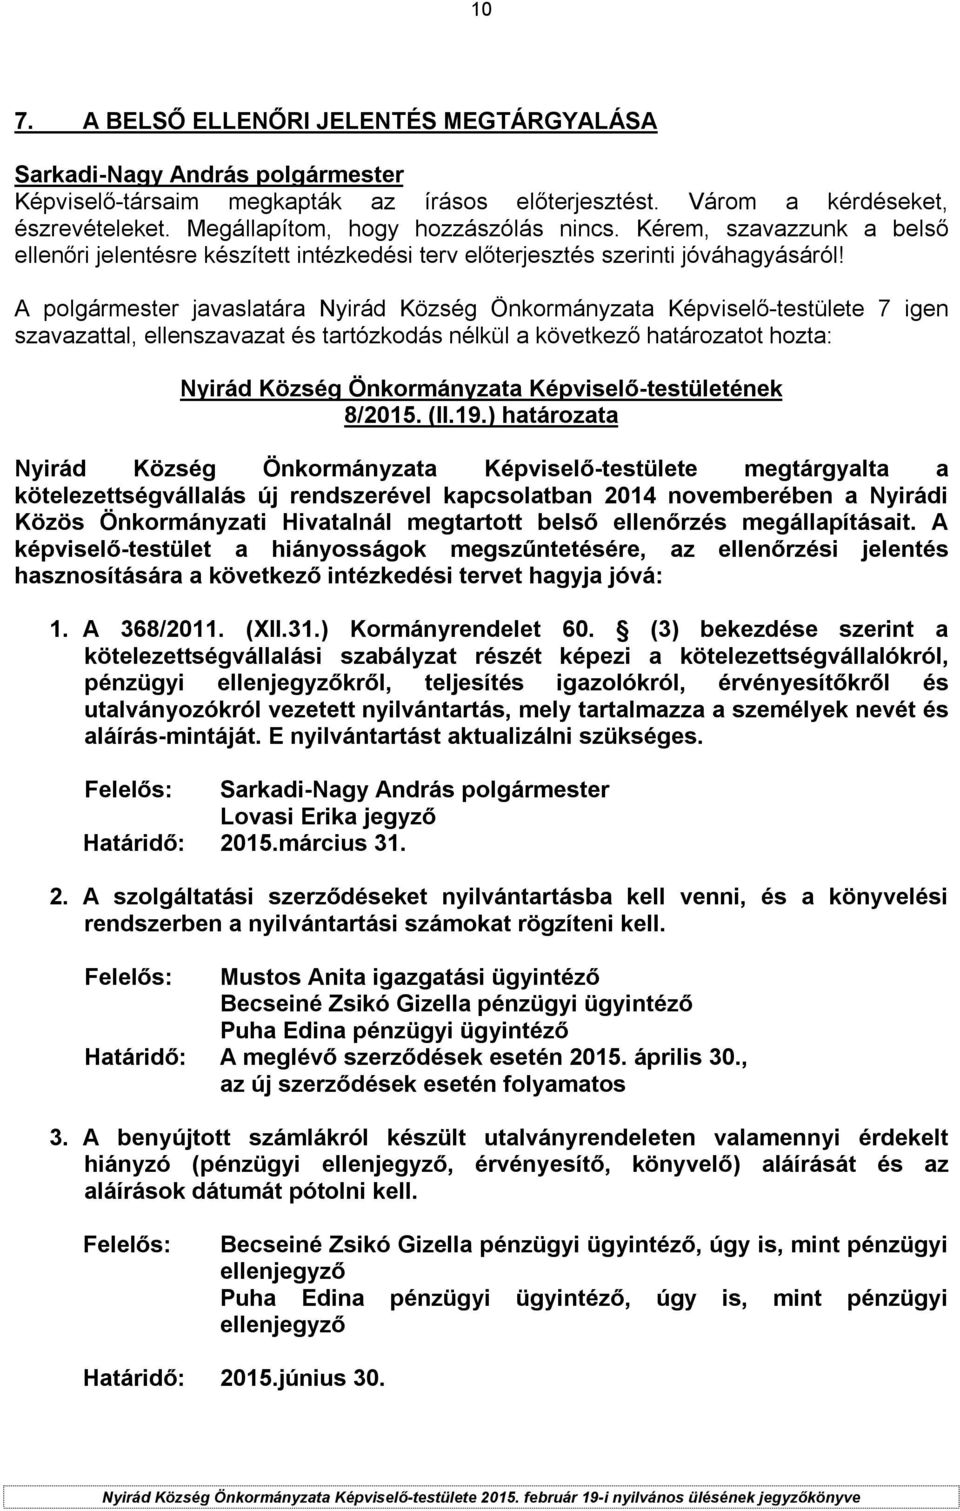 ) határozata Nyirád Község Önkormányzata Képviselő-testülete megtárgyalta a kötelezettségvállalás új rendszerével kapcsolatban 2014 novemberében a Nyirádi Közös Önkormányzati Hivatalnál megtartott